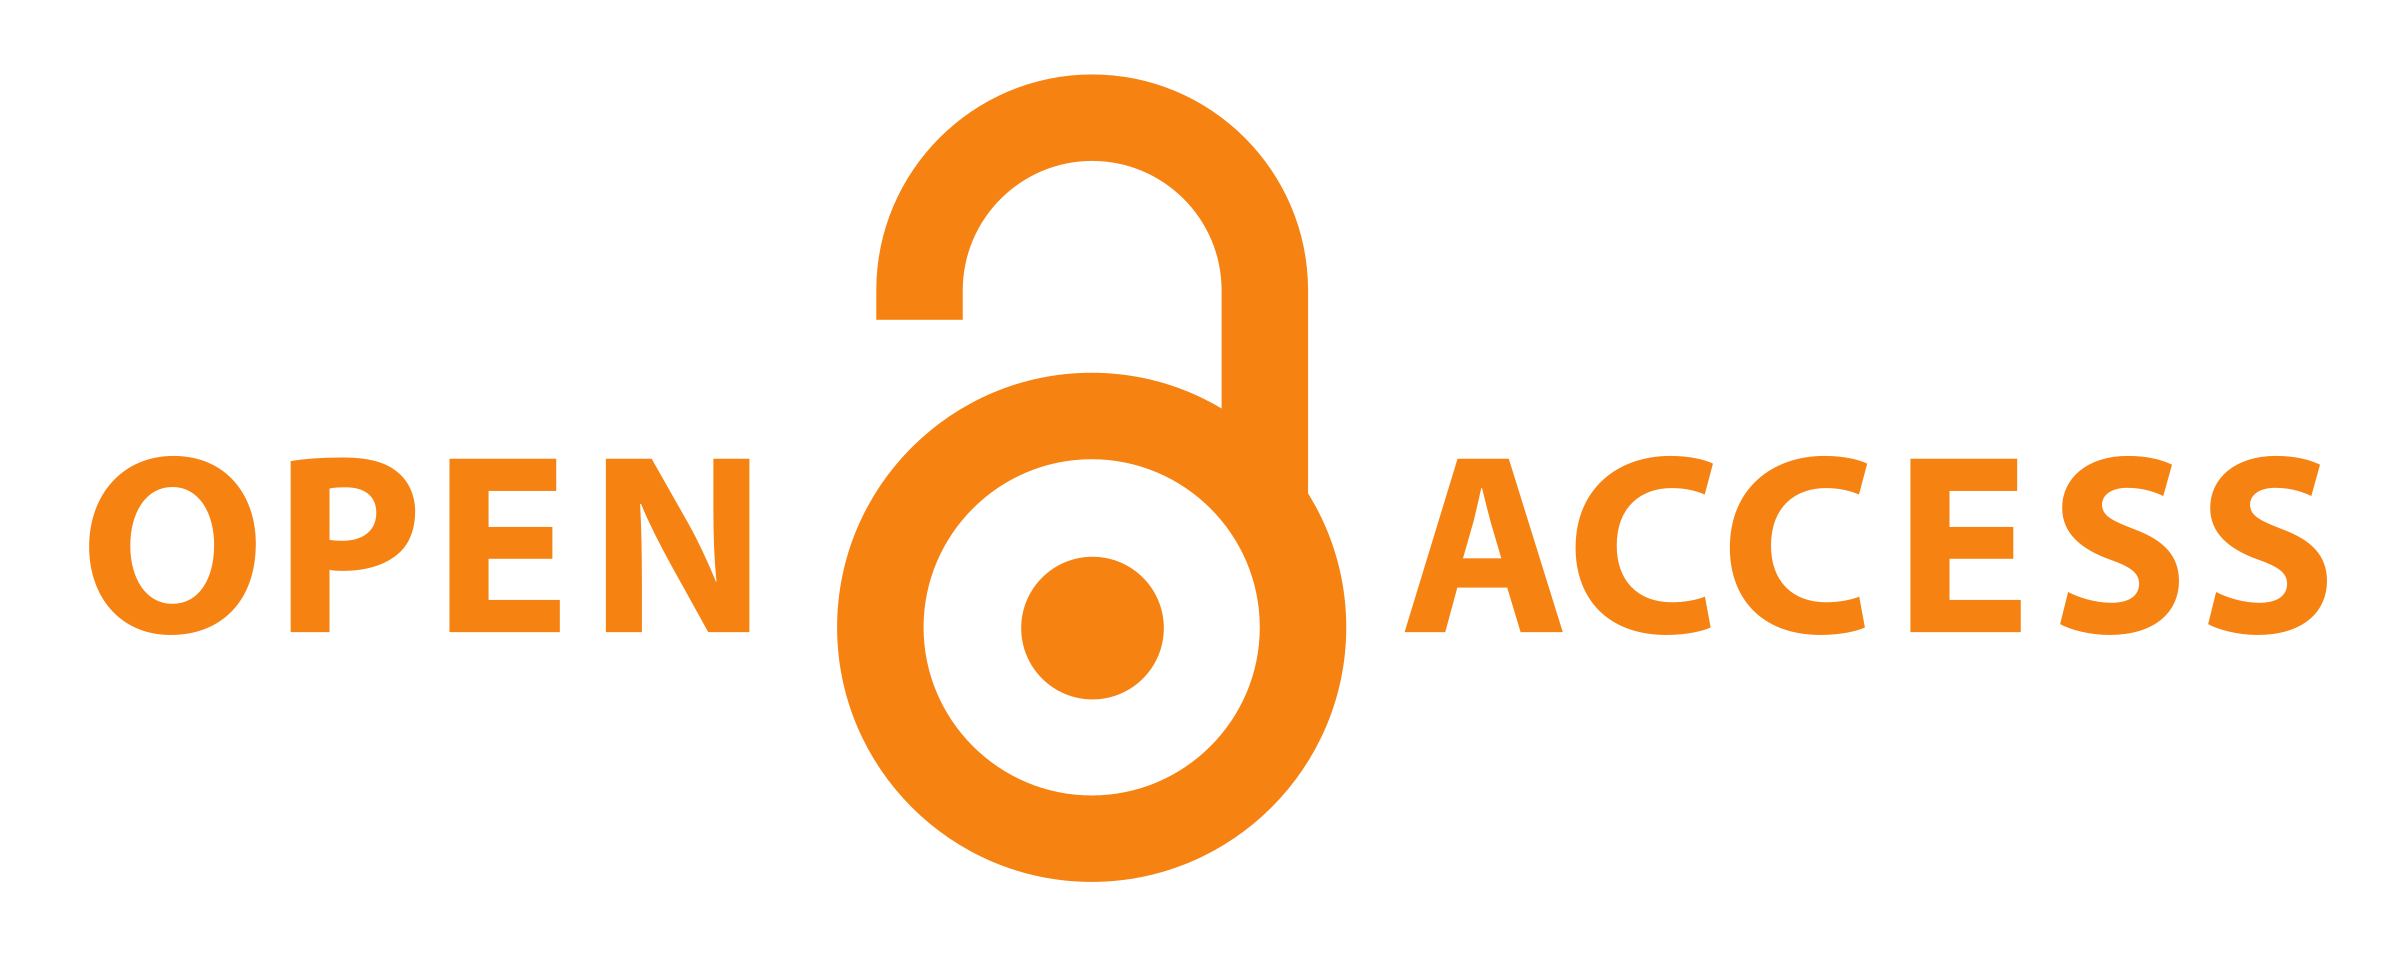 Logo Open Acces - na białym tle widnieje pomarańczowy napis OPEN ACCESS. Pomiędzy słowami zamieszczona jest prosta grafika otwartej kłódki.